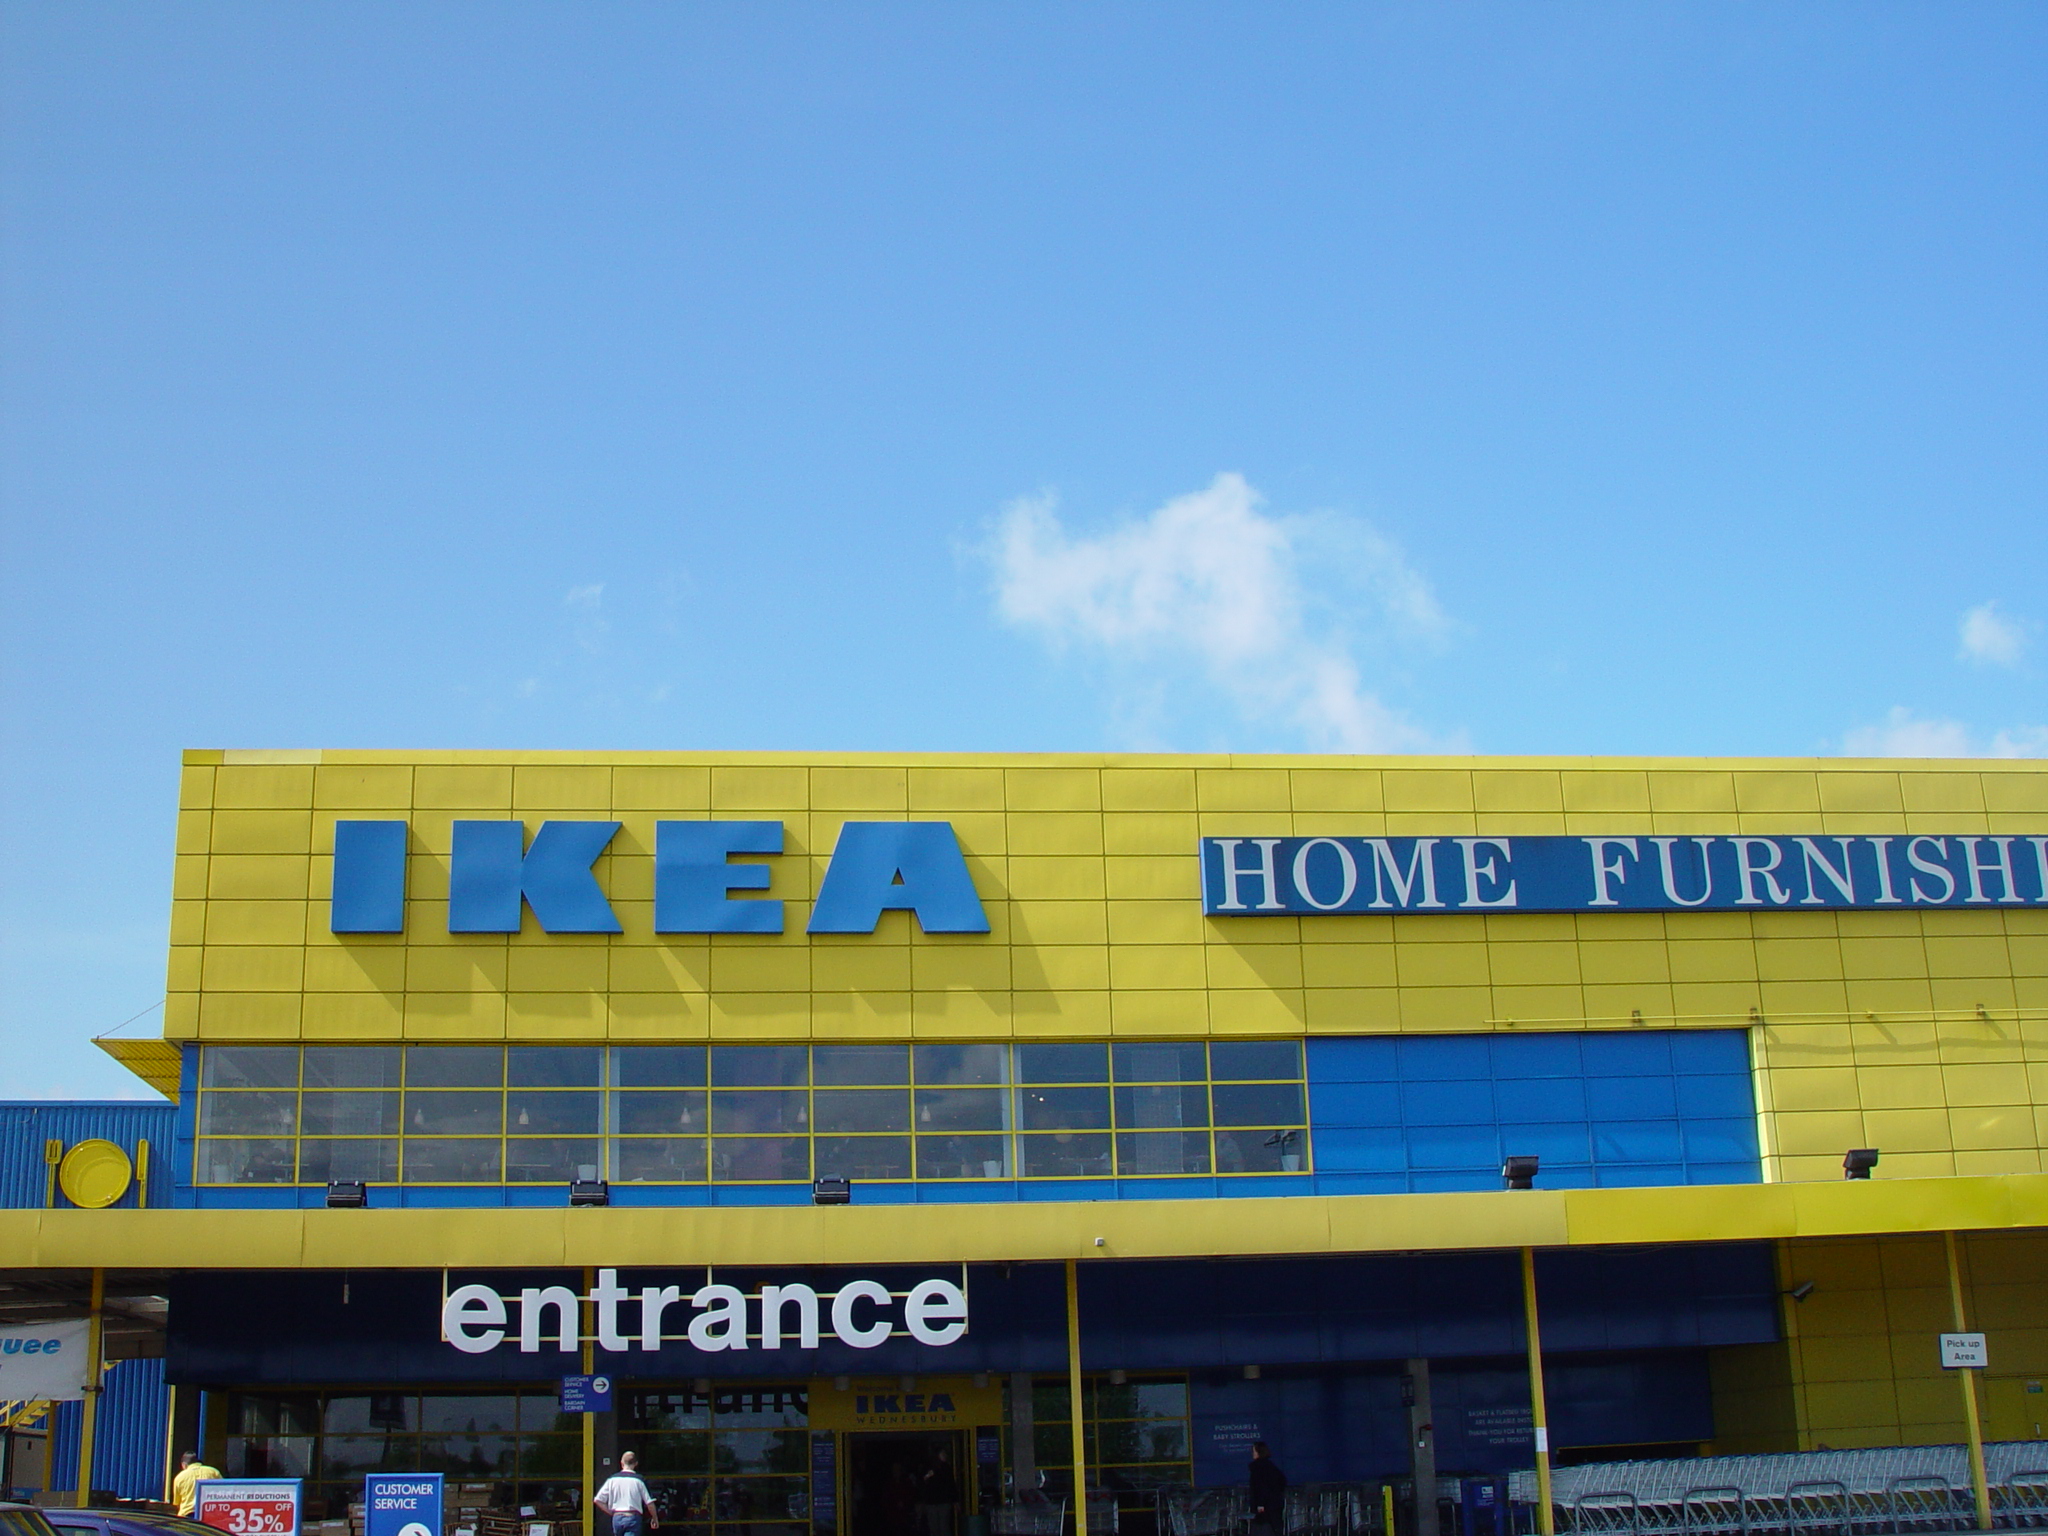 London IKEA in 2003